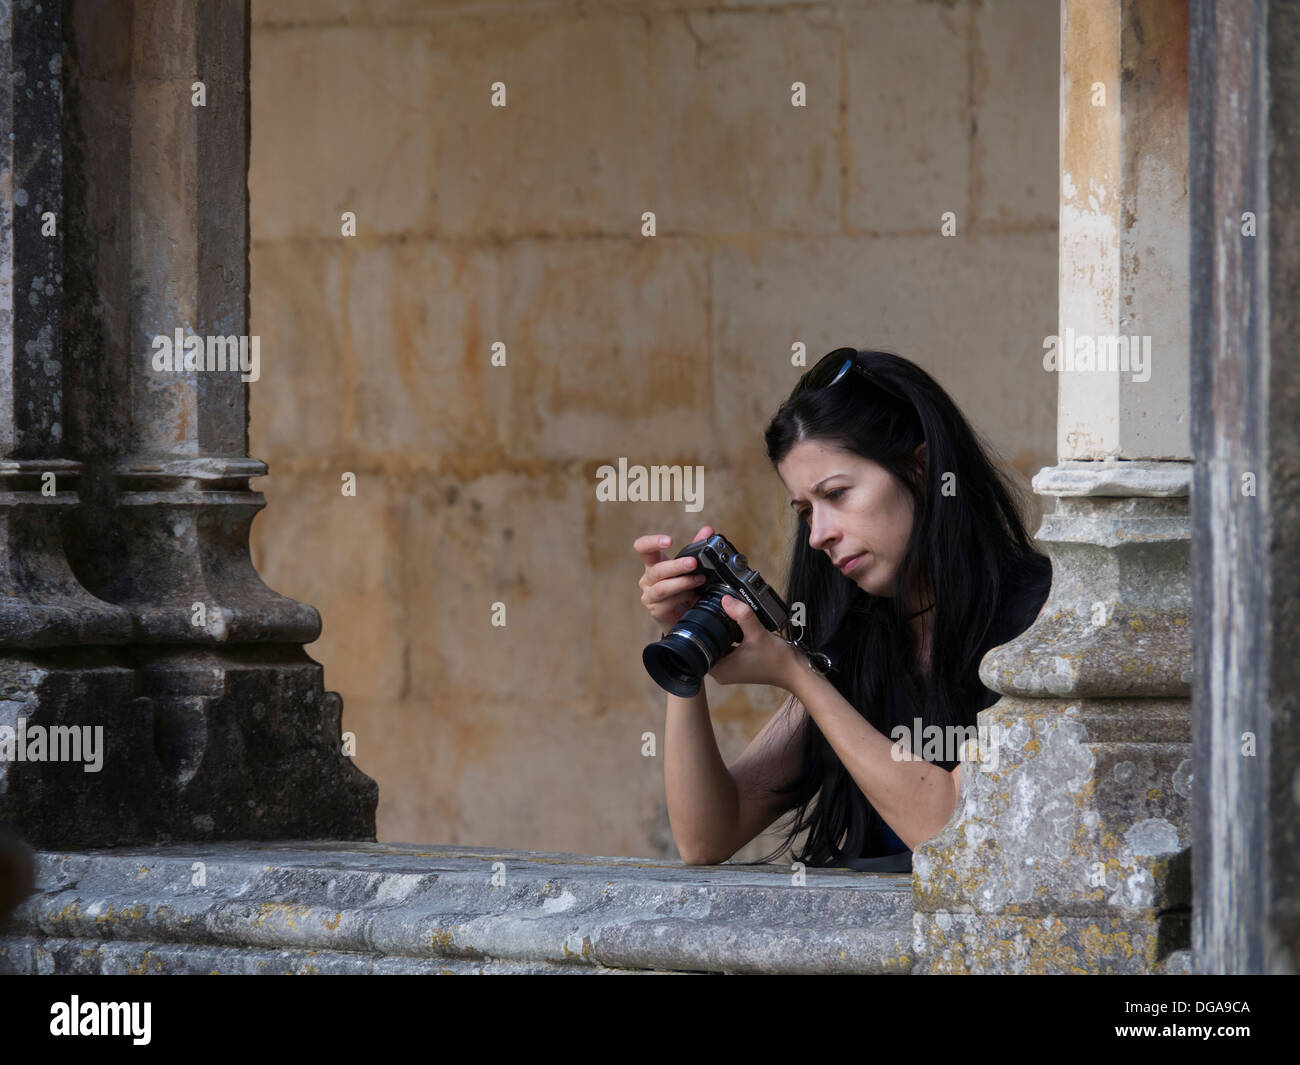 Giovane donna guardando il display LCD sul retro della sua fotocamera digitale durante la ripresa di immagini Foto Stock